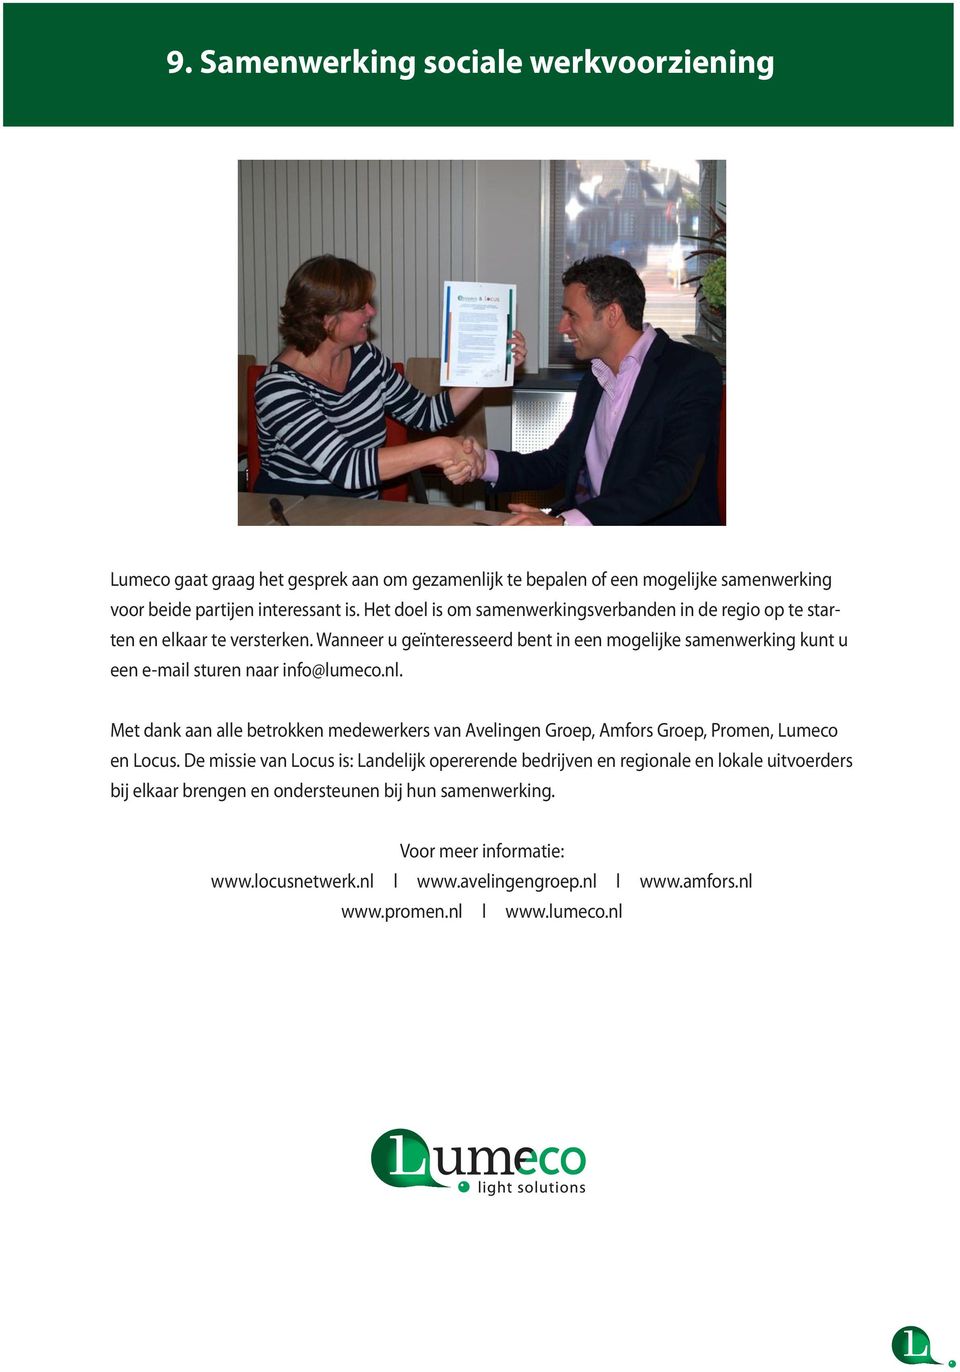 Wanneer u geïnteresseerd bent in een mogelijke samenwerking kunt u een e-mail sturen naar info@lumeco.nl.